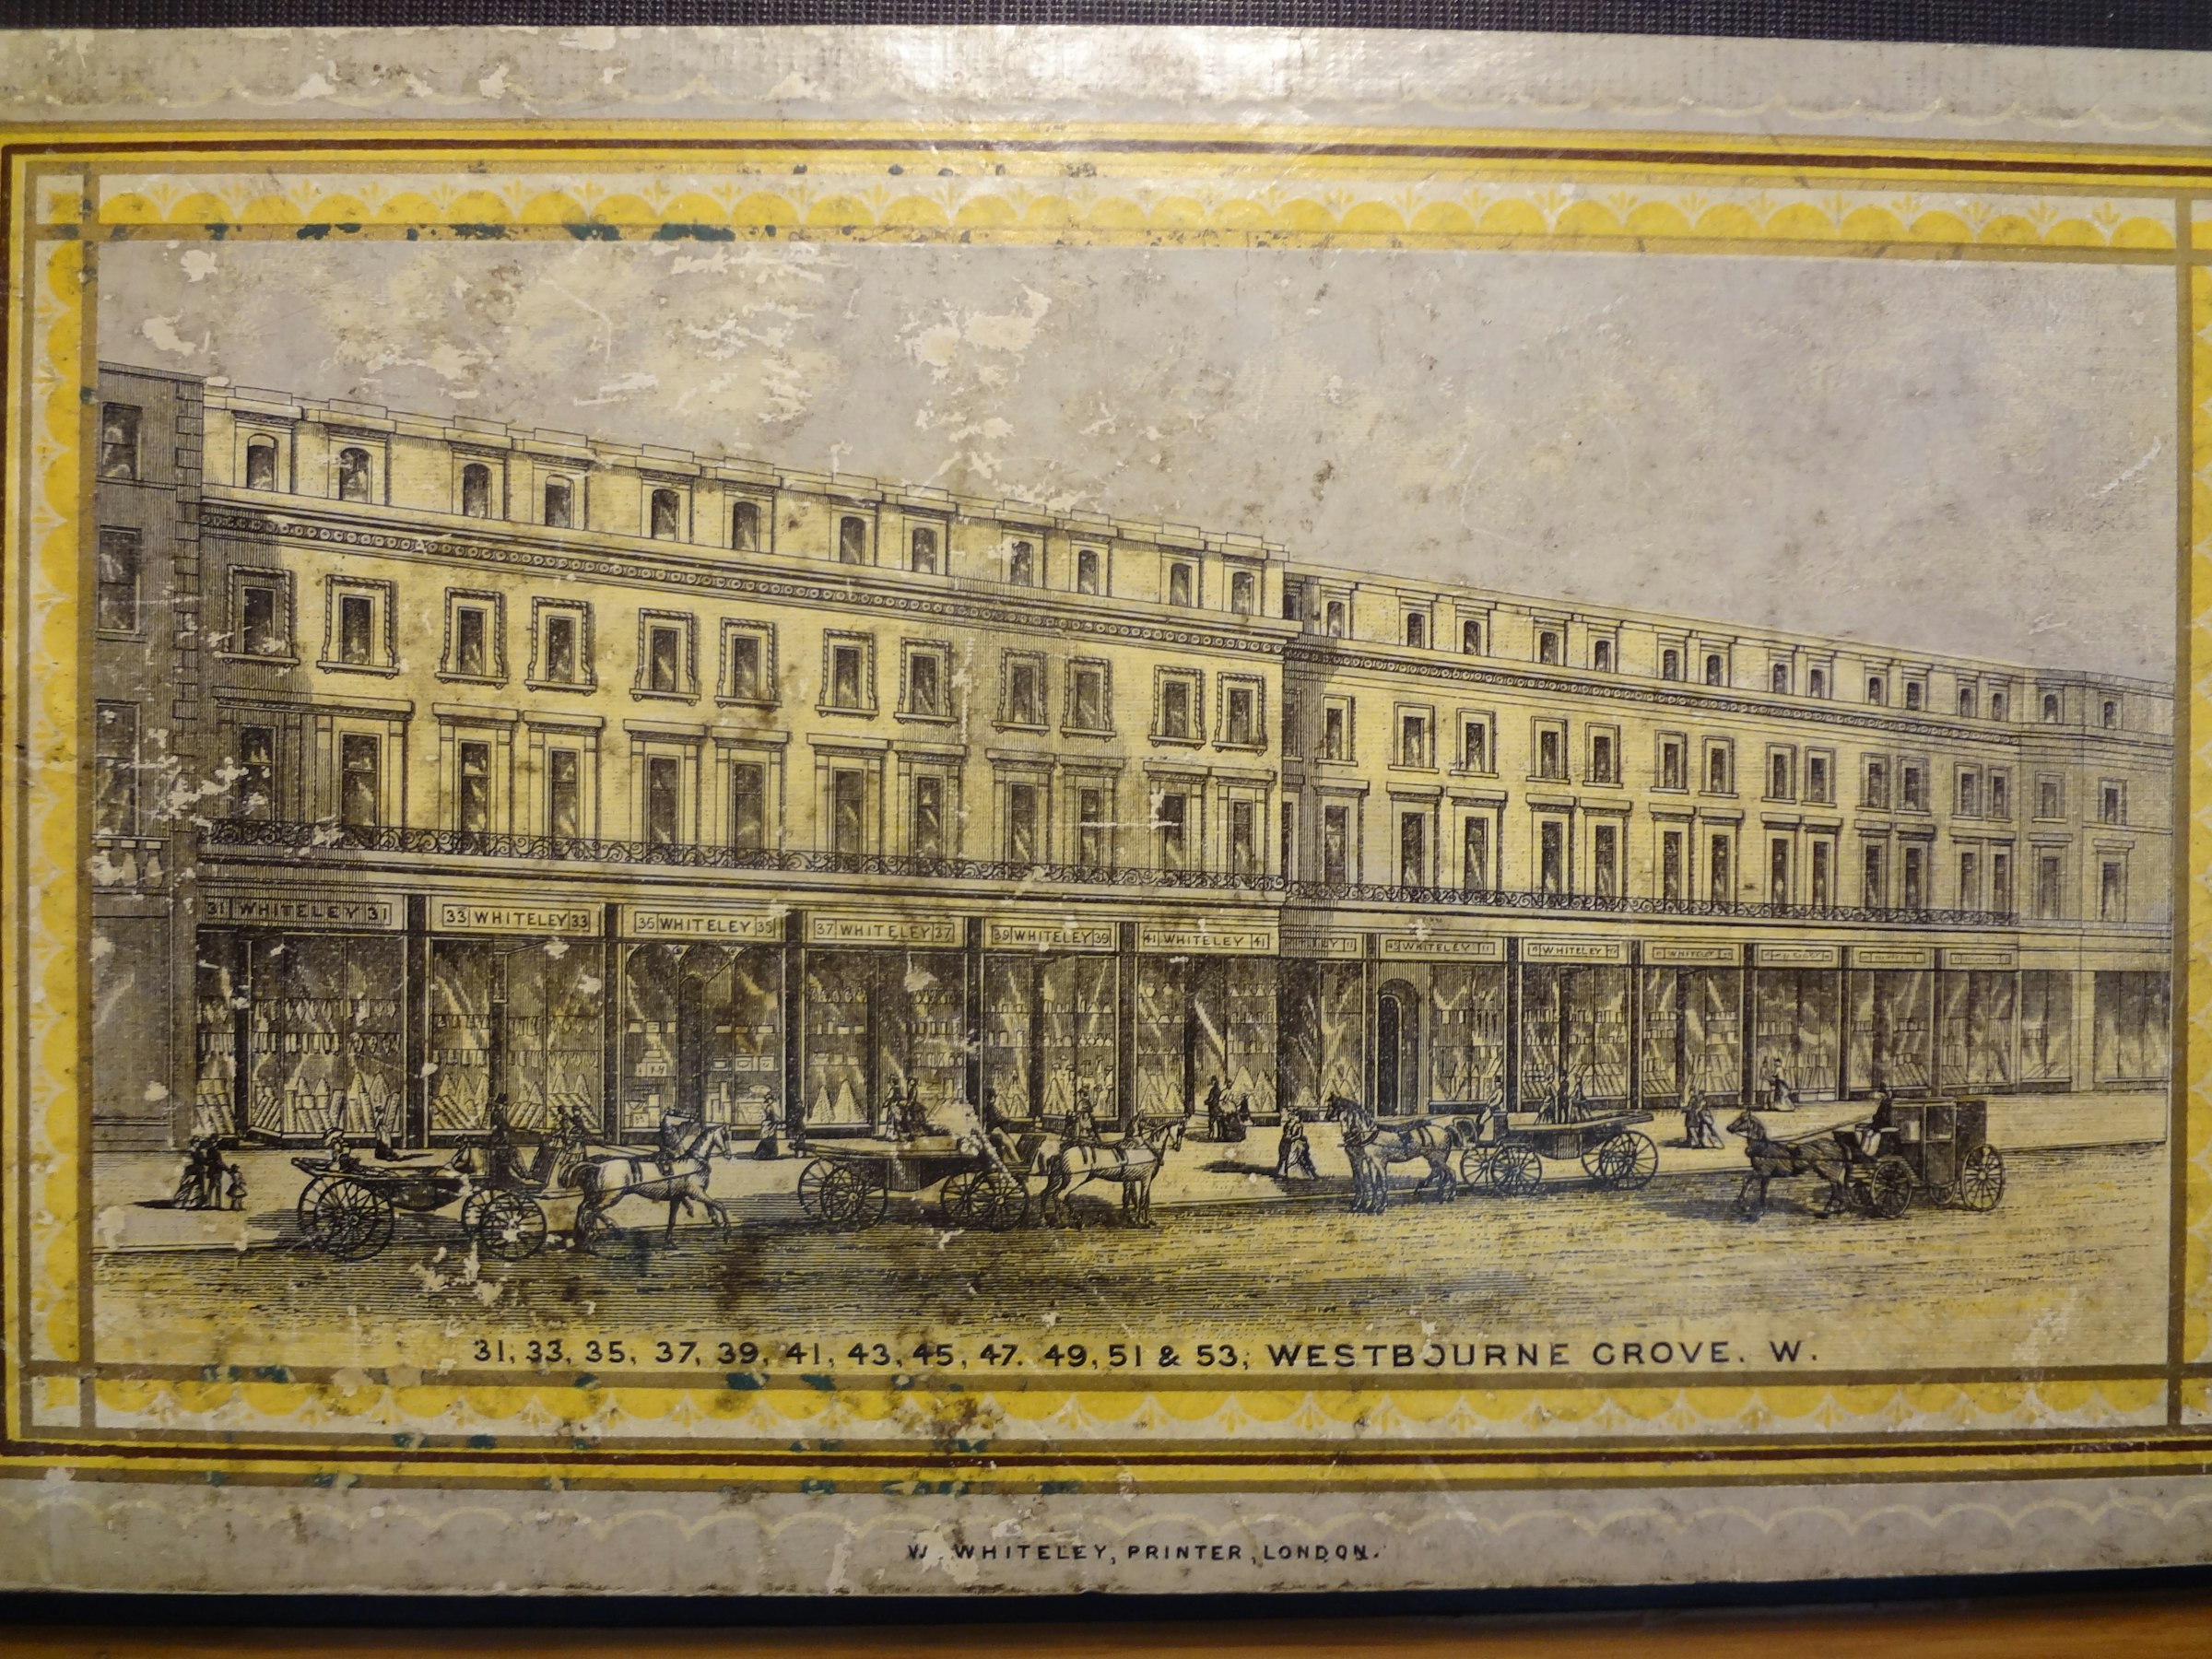 画像: 1877年頃のデパートの外観